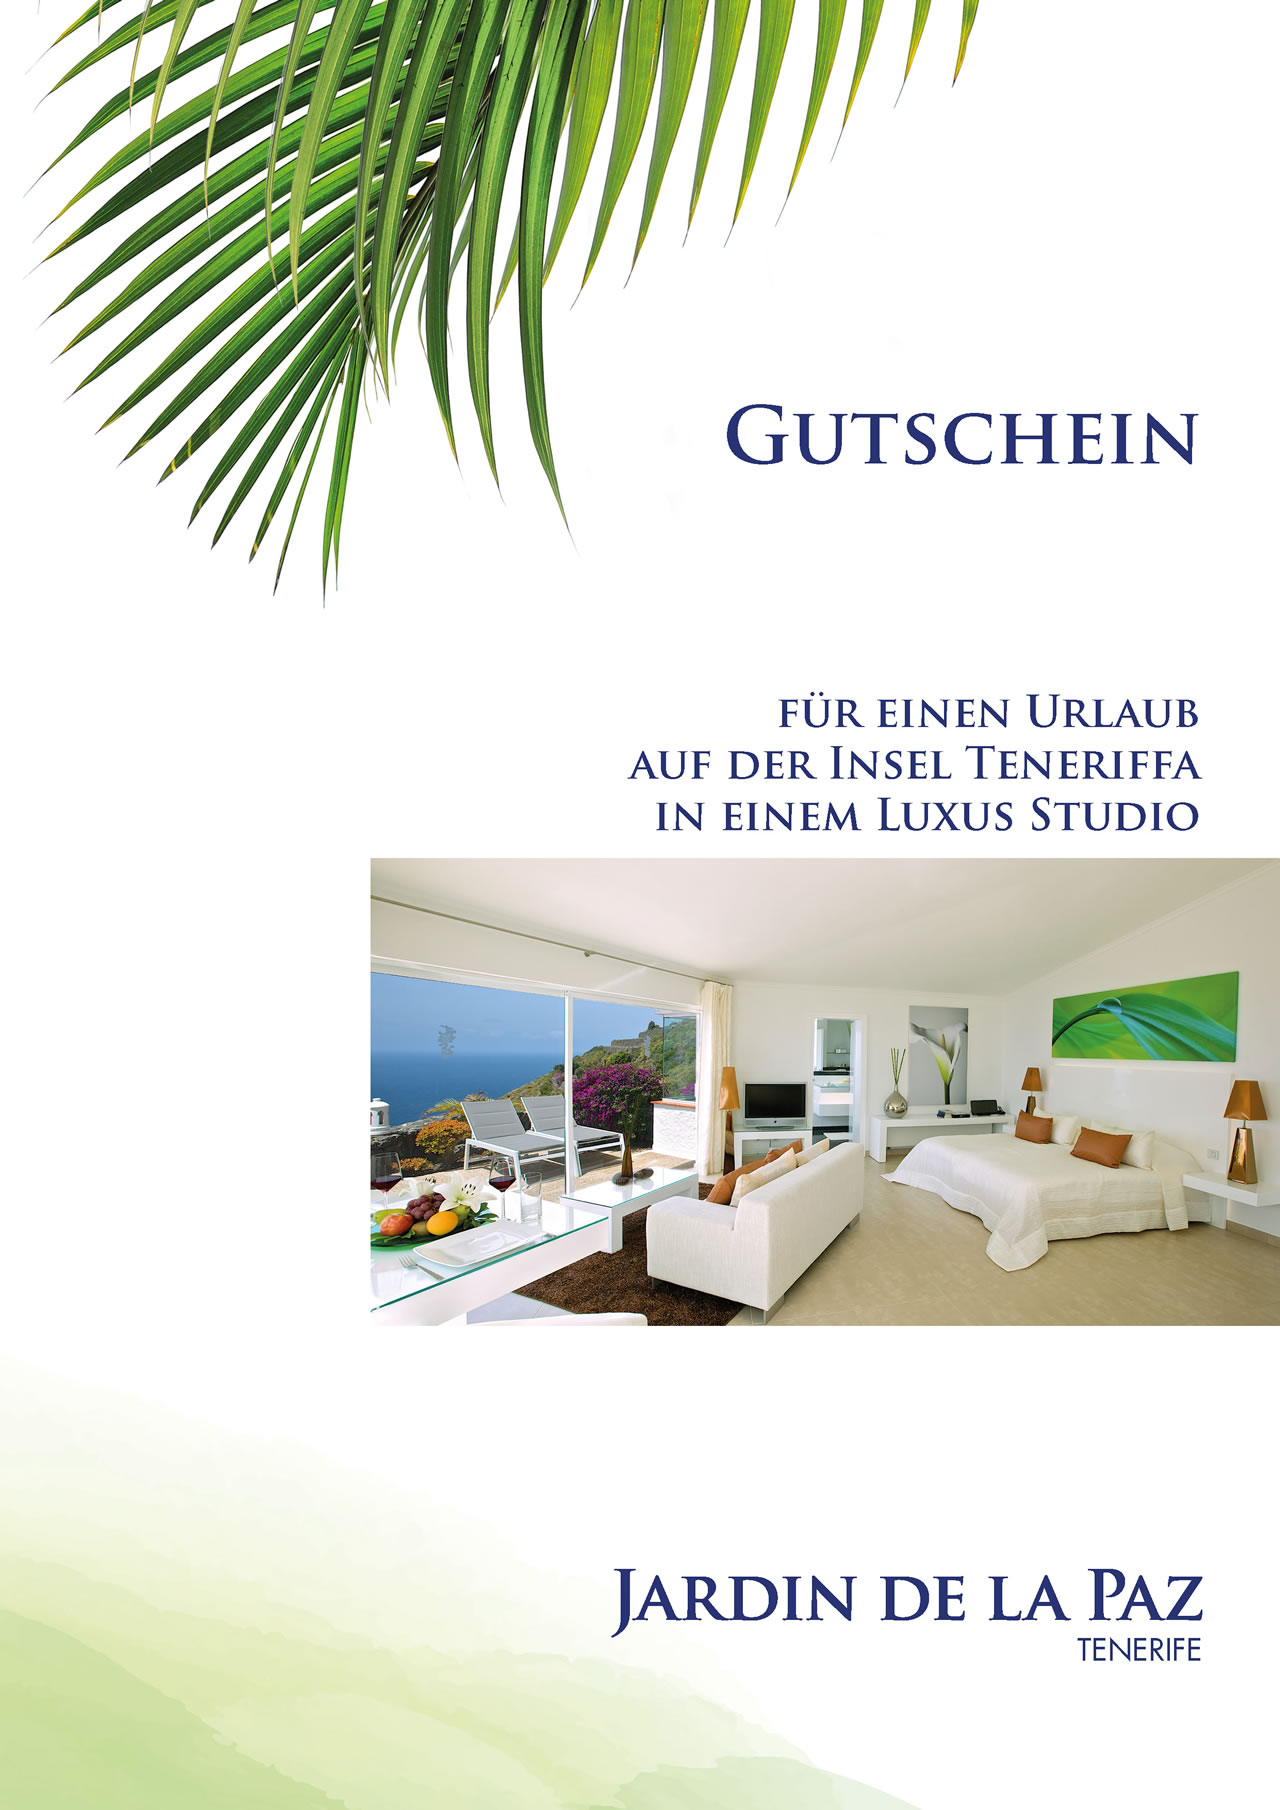 Gutschein Luxus Studio